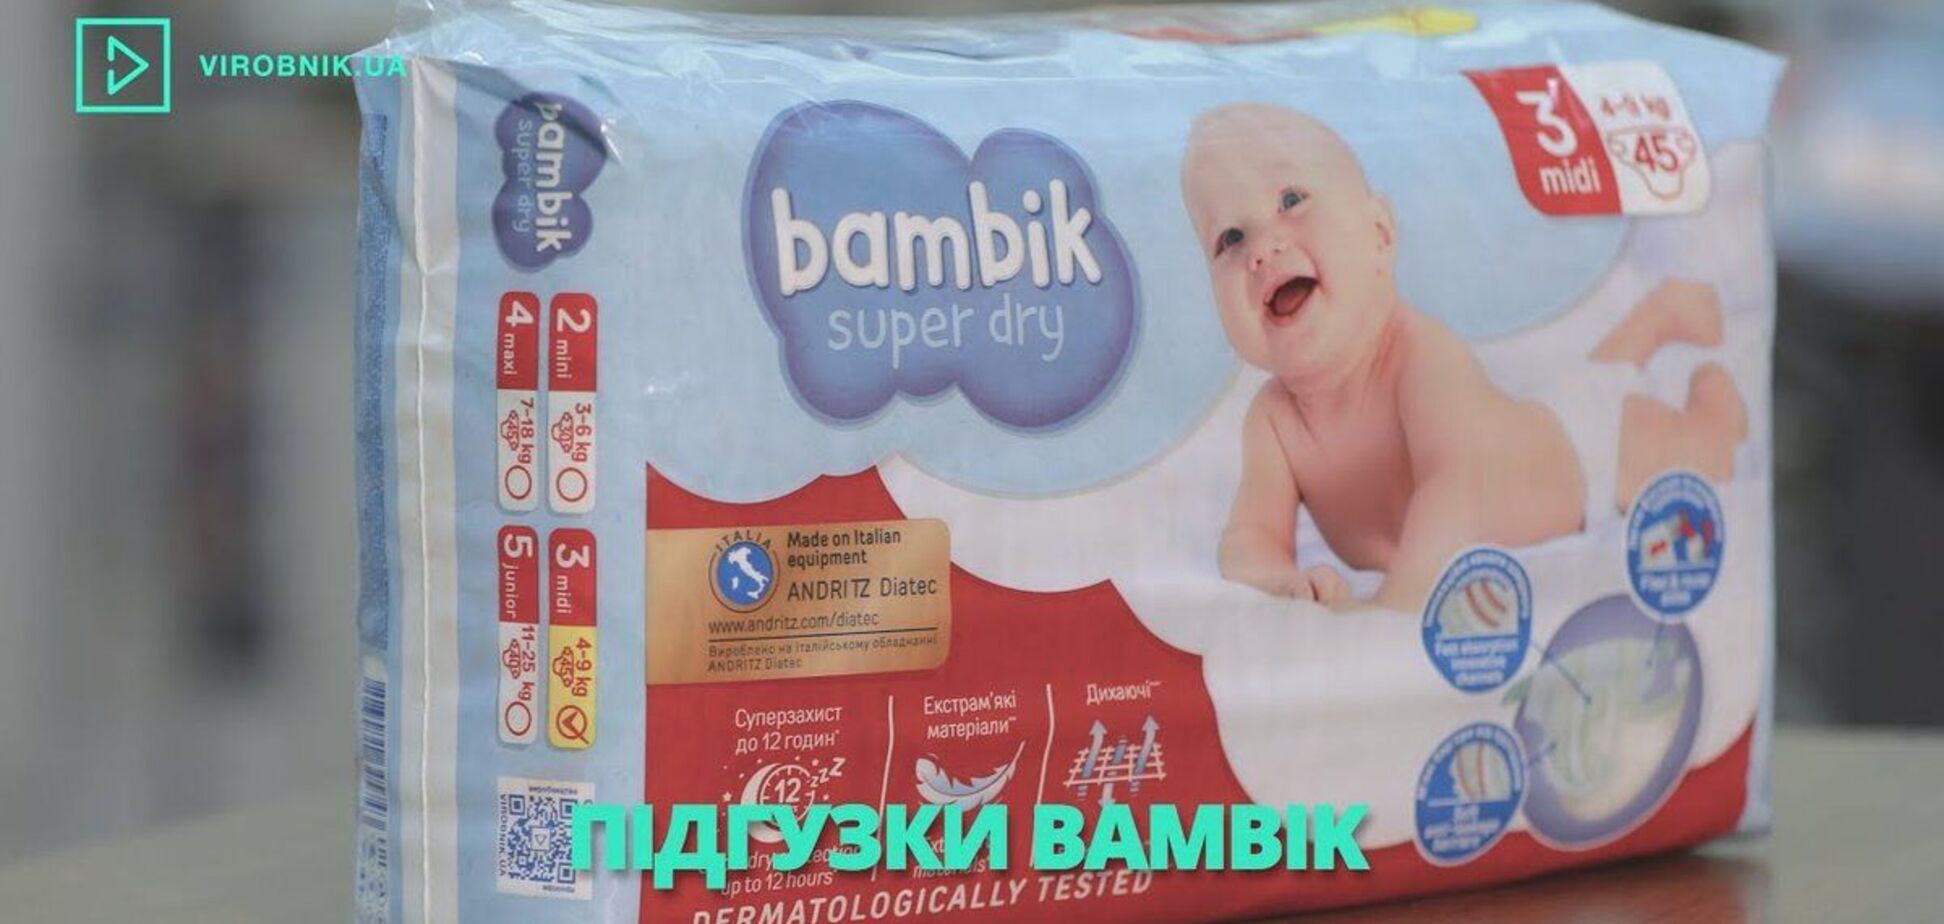 К проекту Virobnik.ua присоединилась корпорация 'Биосфера' с брендом подгузник Bambik / Скриншот с сайта